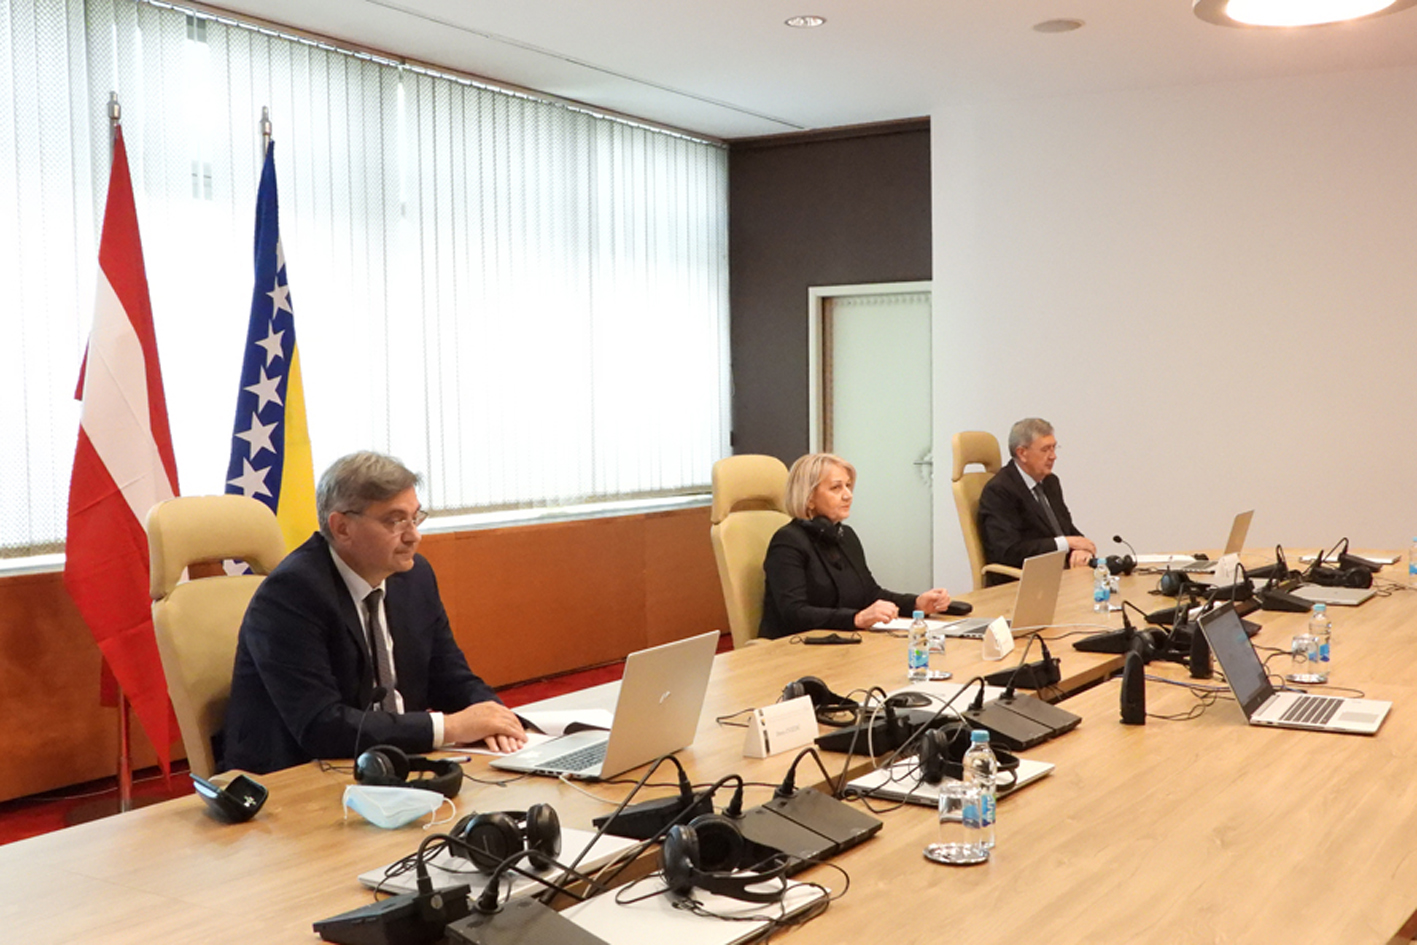 Članovi Kolegija Predstavničkog doma održali online sastanak sa predsjednikom Nacionalnog vijeća Parlamenta Republike Austrije